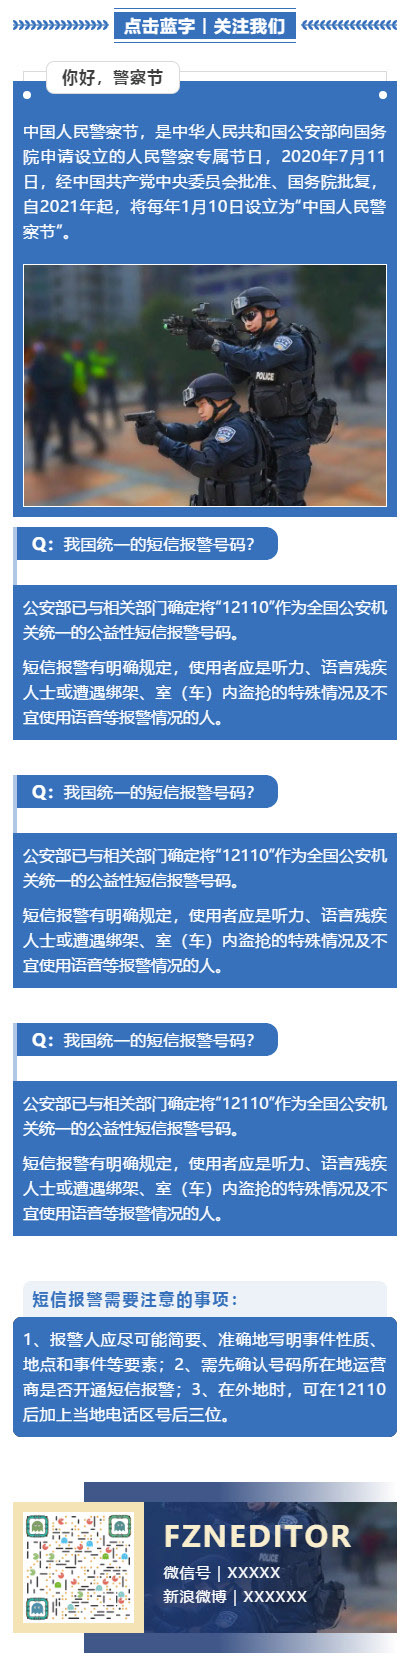 中国人民警察节110宣传日蓝色微信公众号推文素材模板